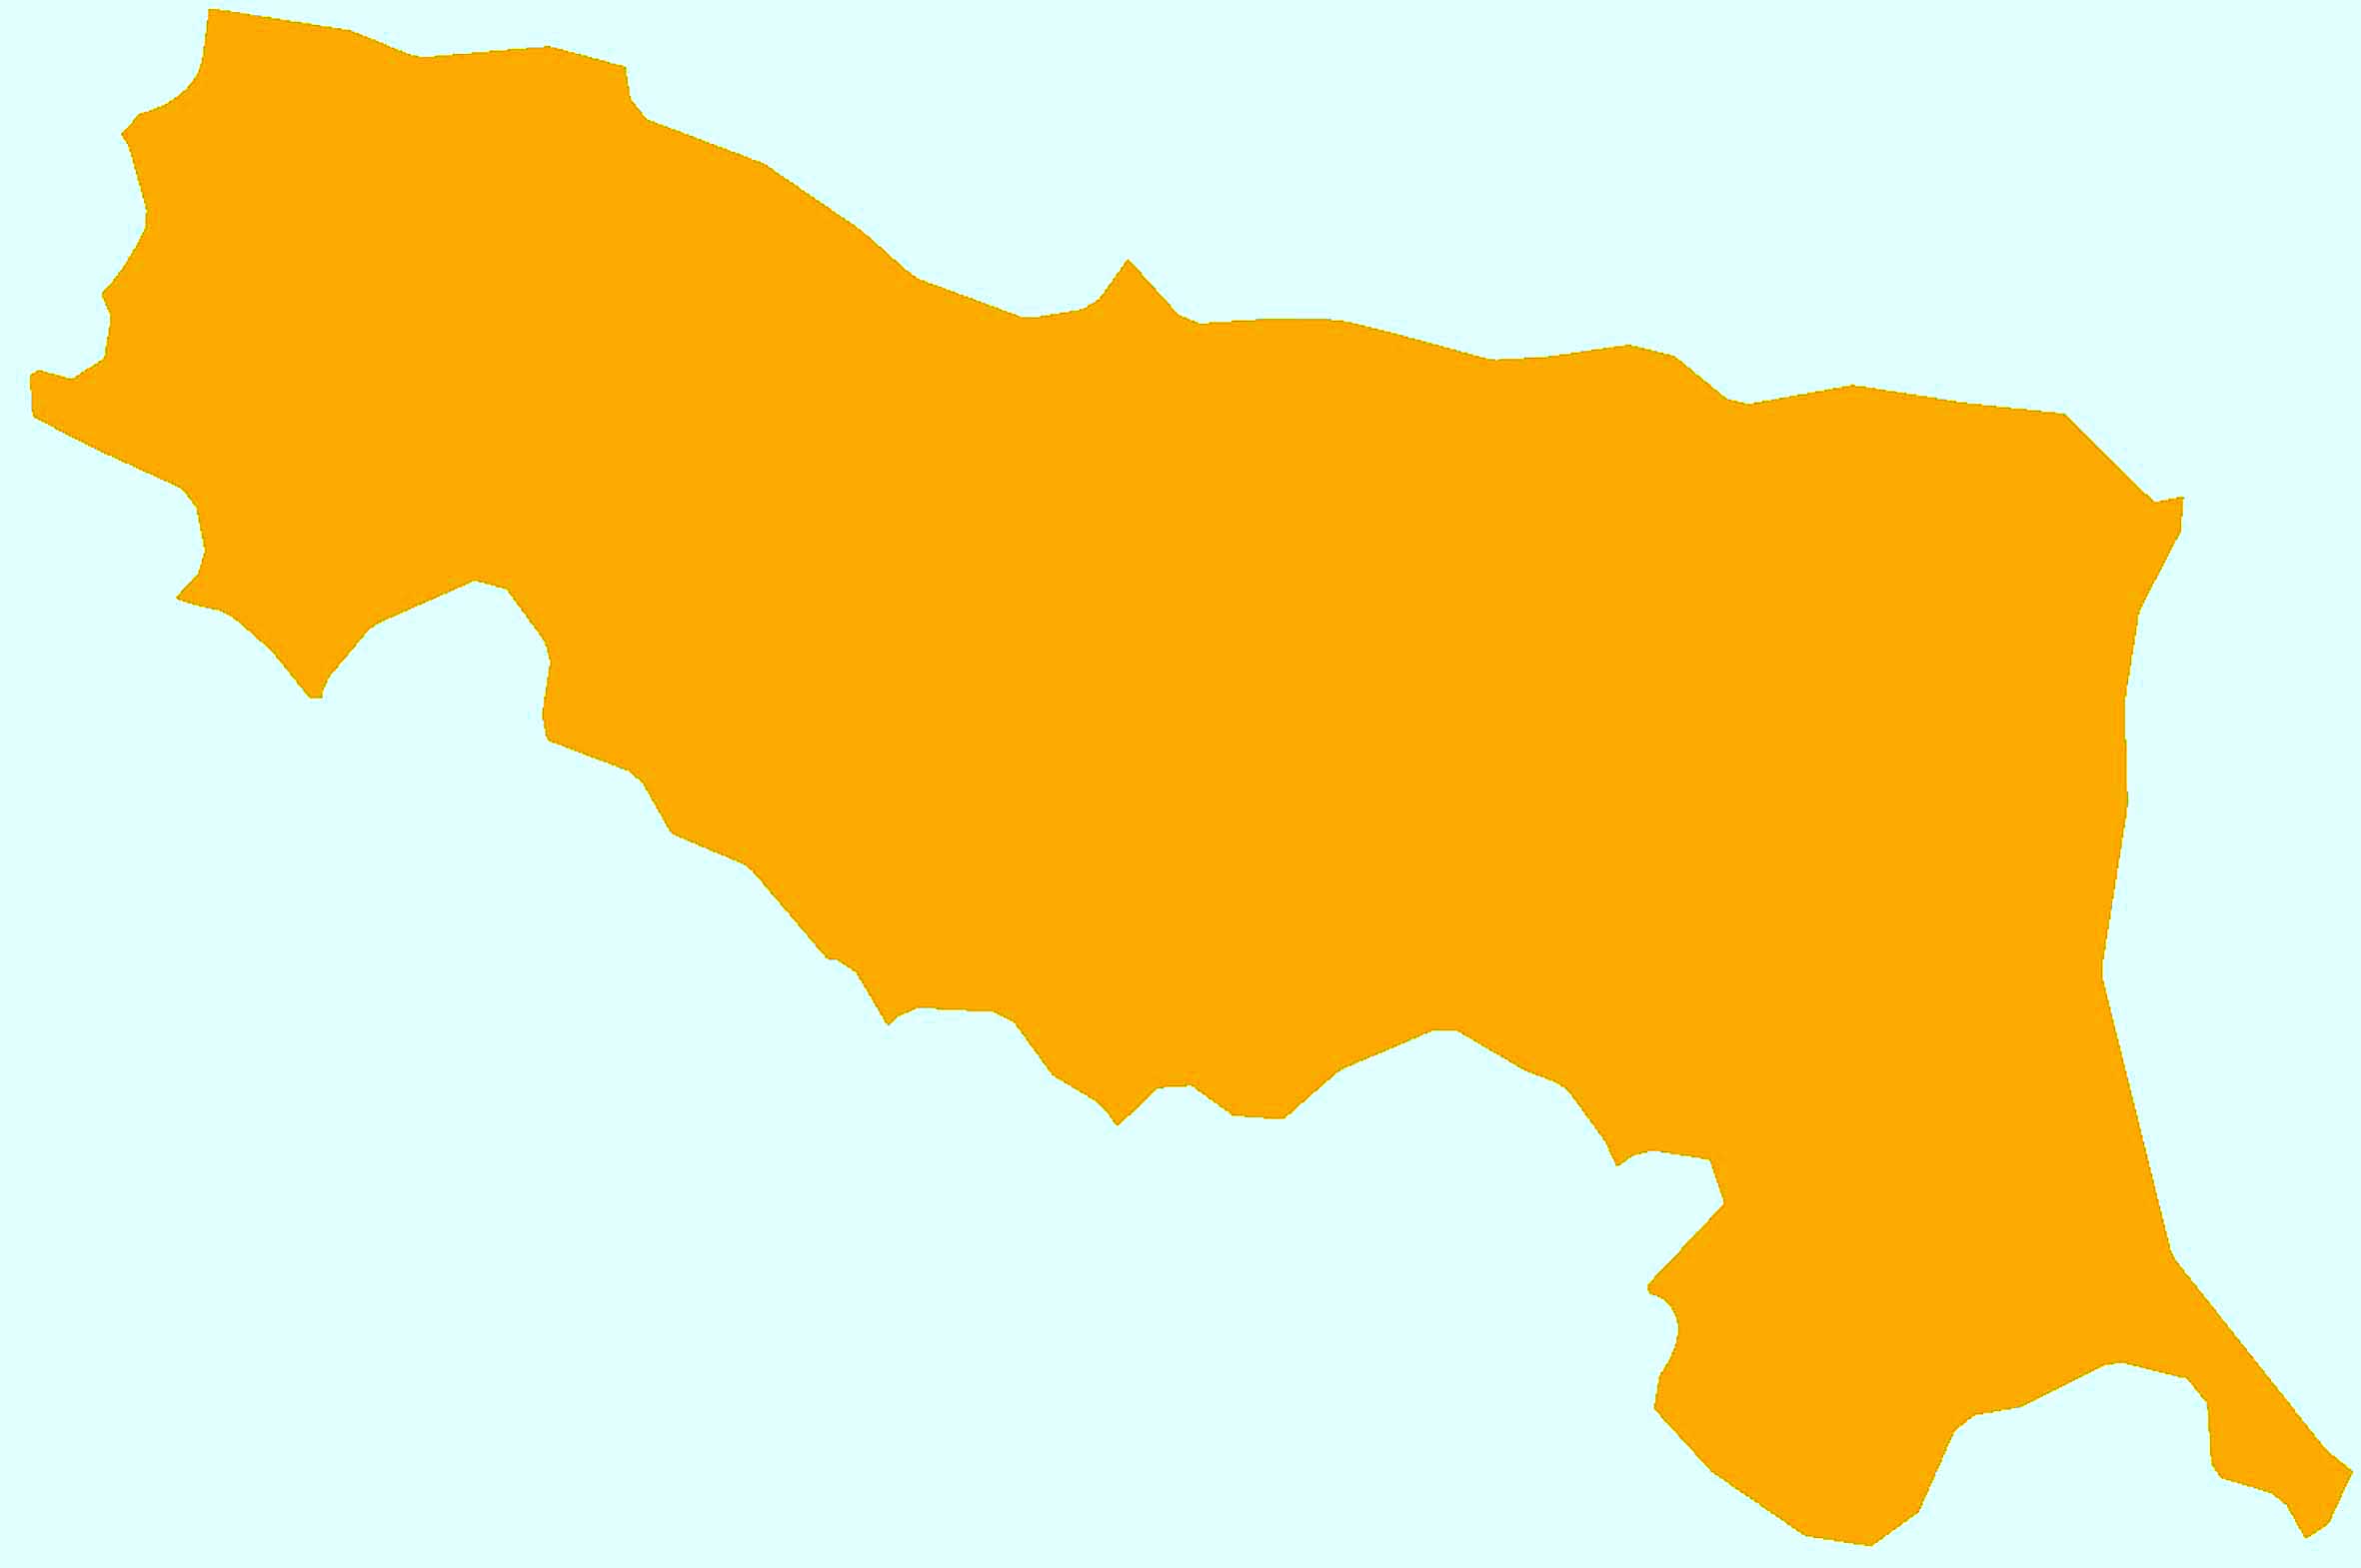 Emilia-Romagna seconda regione italiana sul podio dello sviluppo. Ecco gli scenari per le economie locali di Prometeia, analizzati da Unioncamere Emilia-Romagna